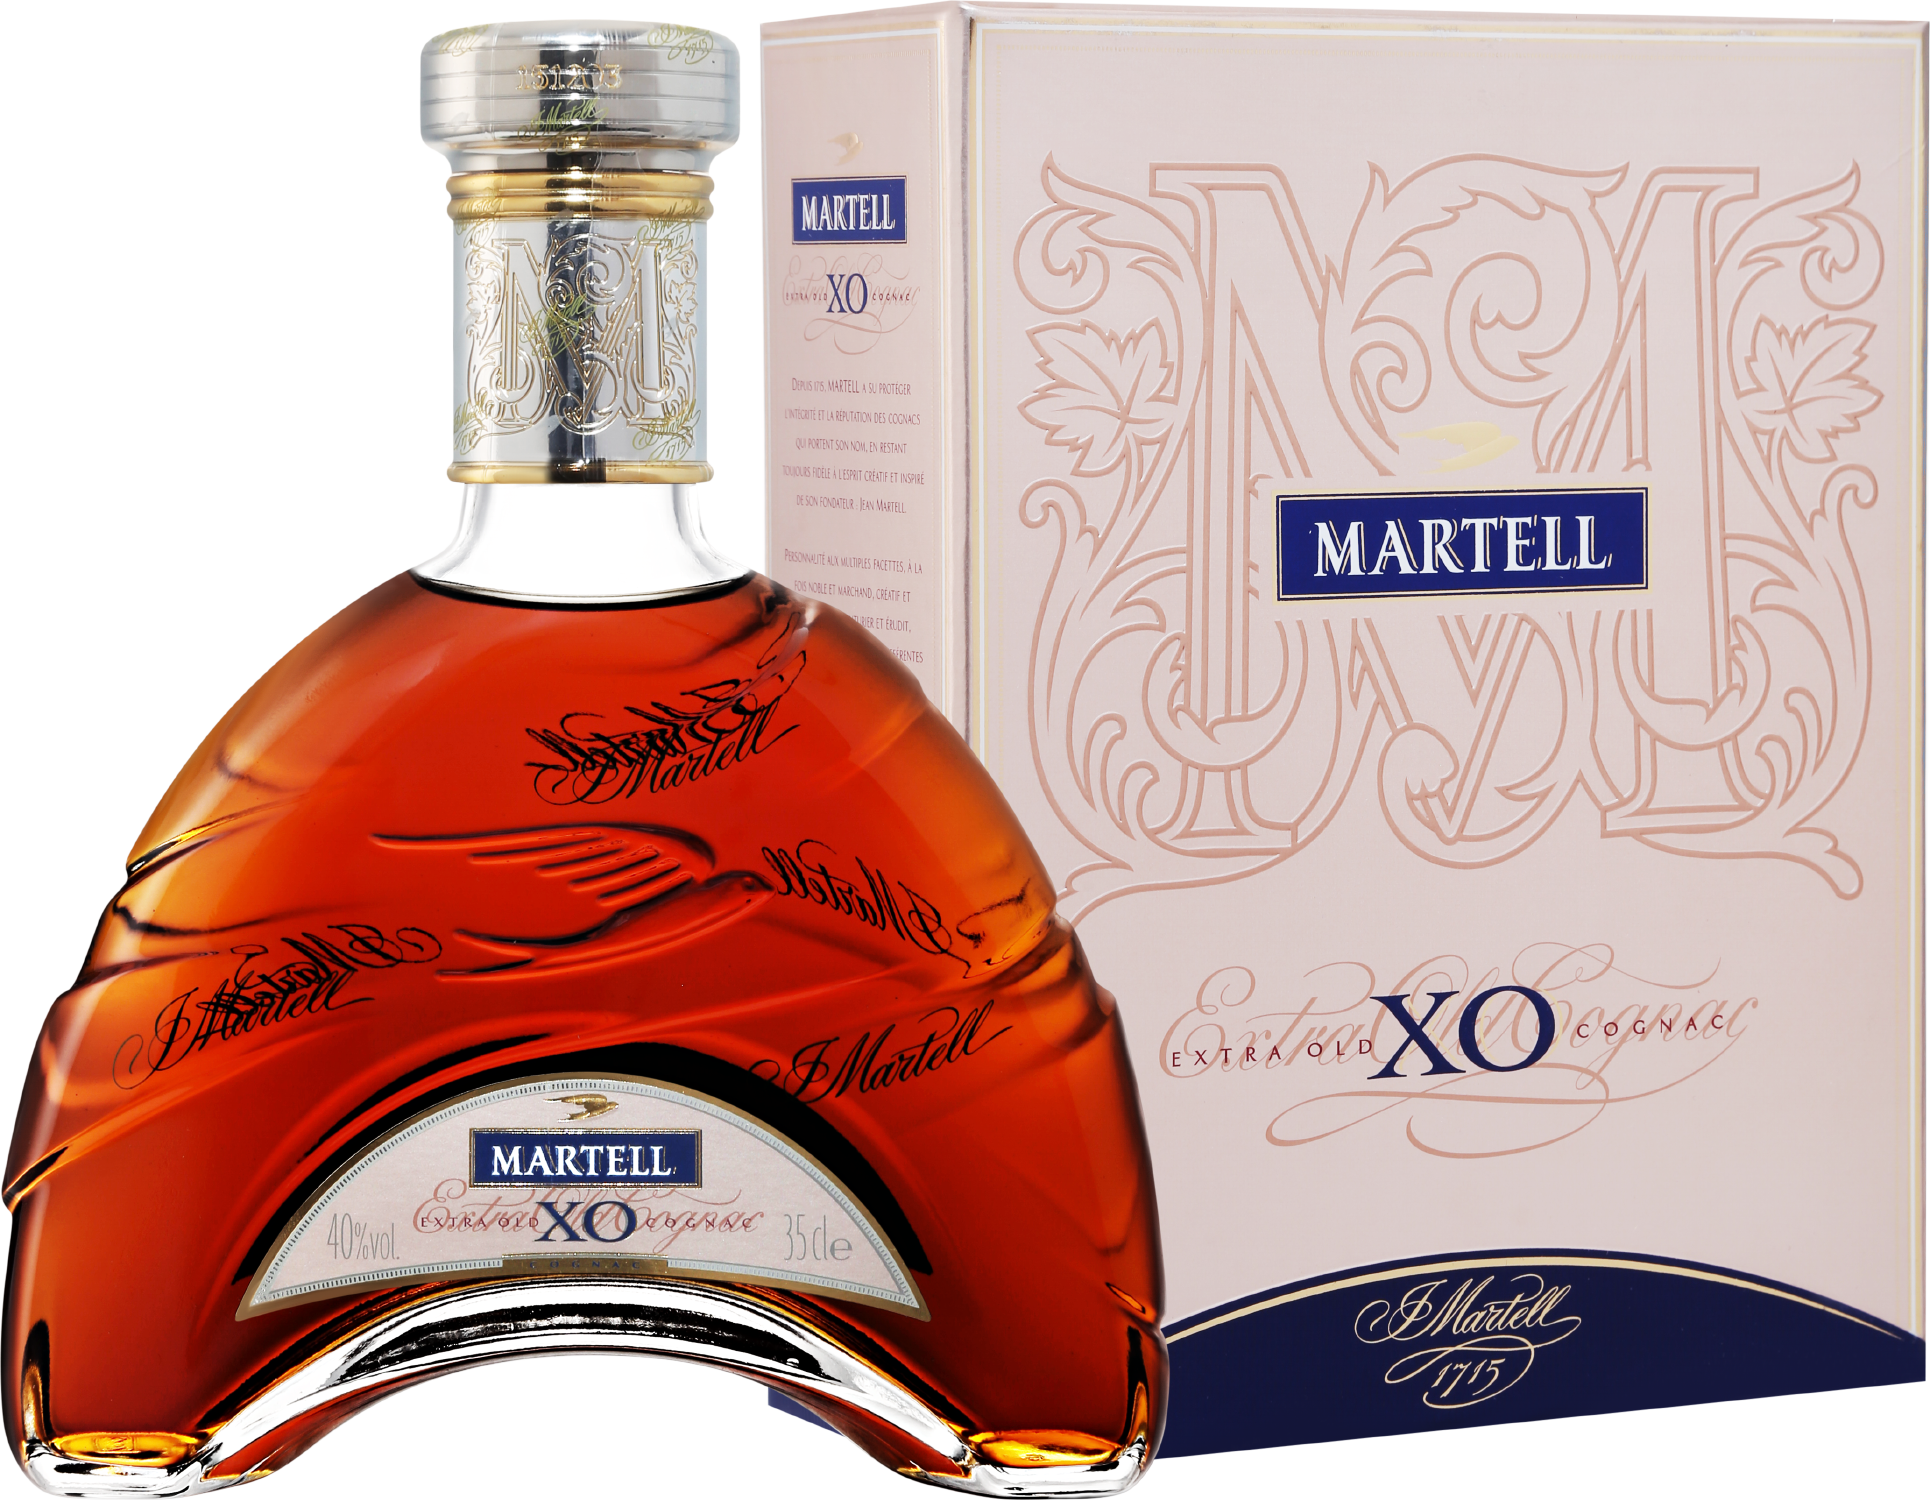 Martell XO (gift box) martell chanteloup perspective xxo gift box